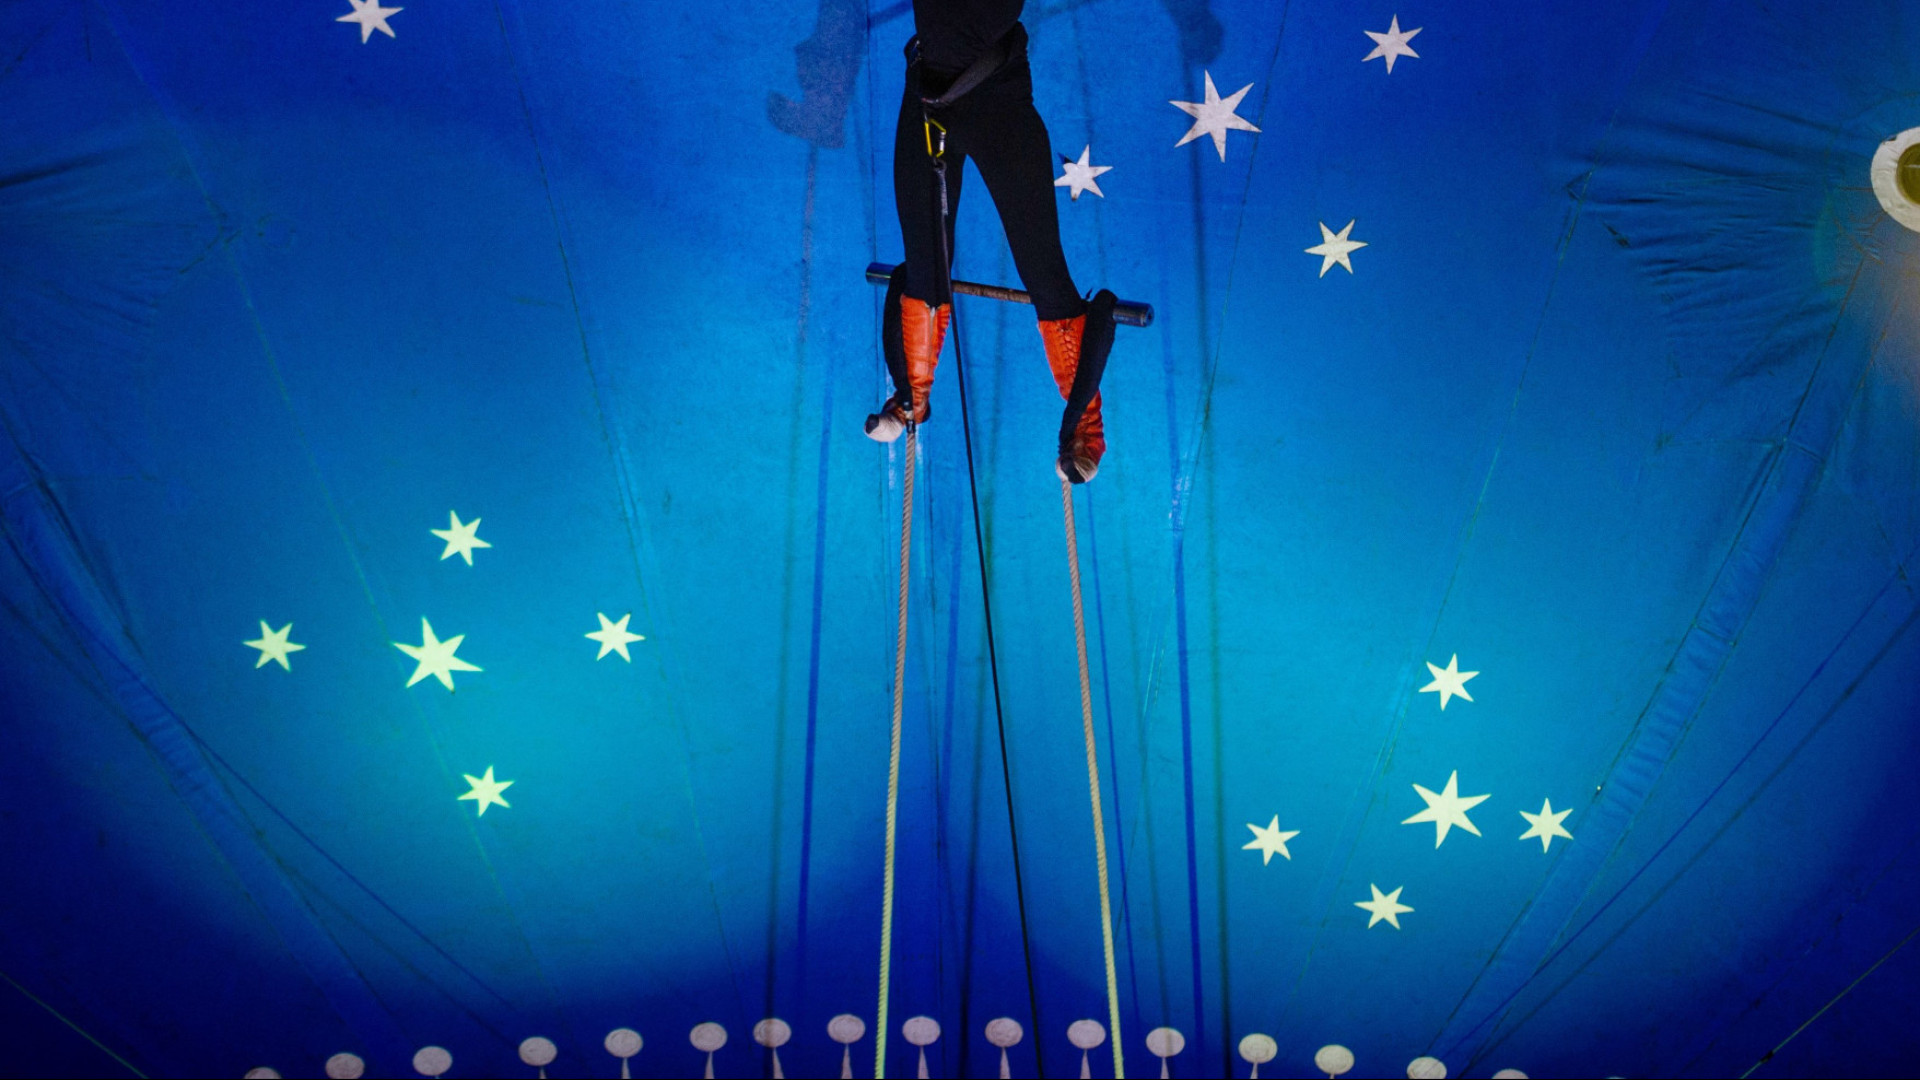 Casal de trapezistas cai de altura de 4 metros durante apresentação em SC